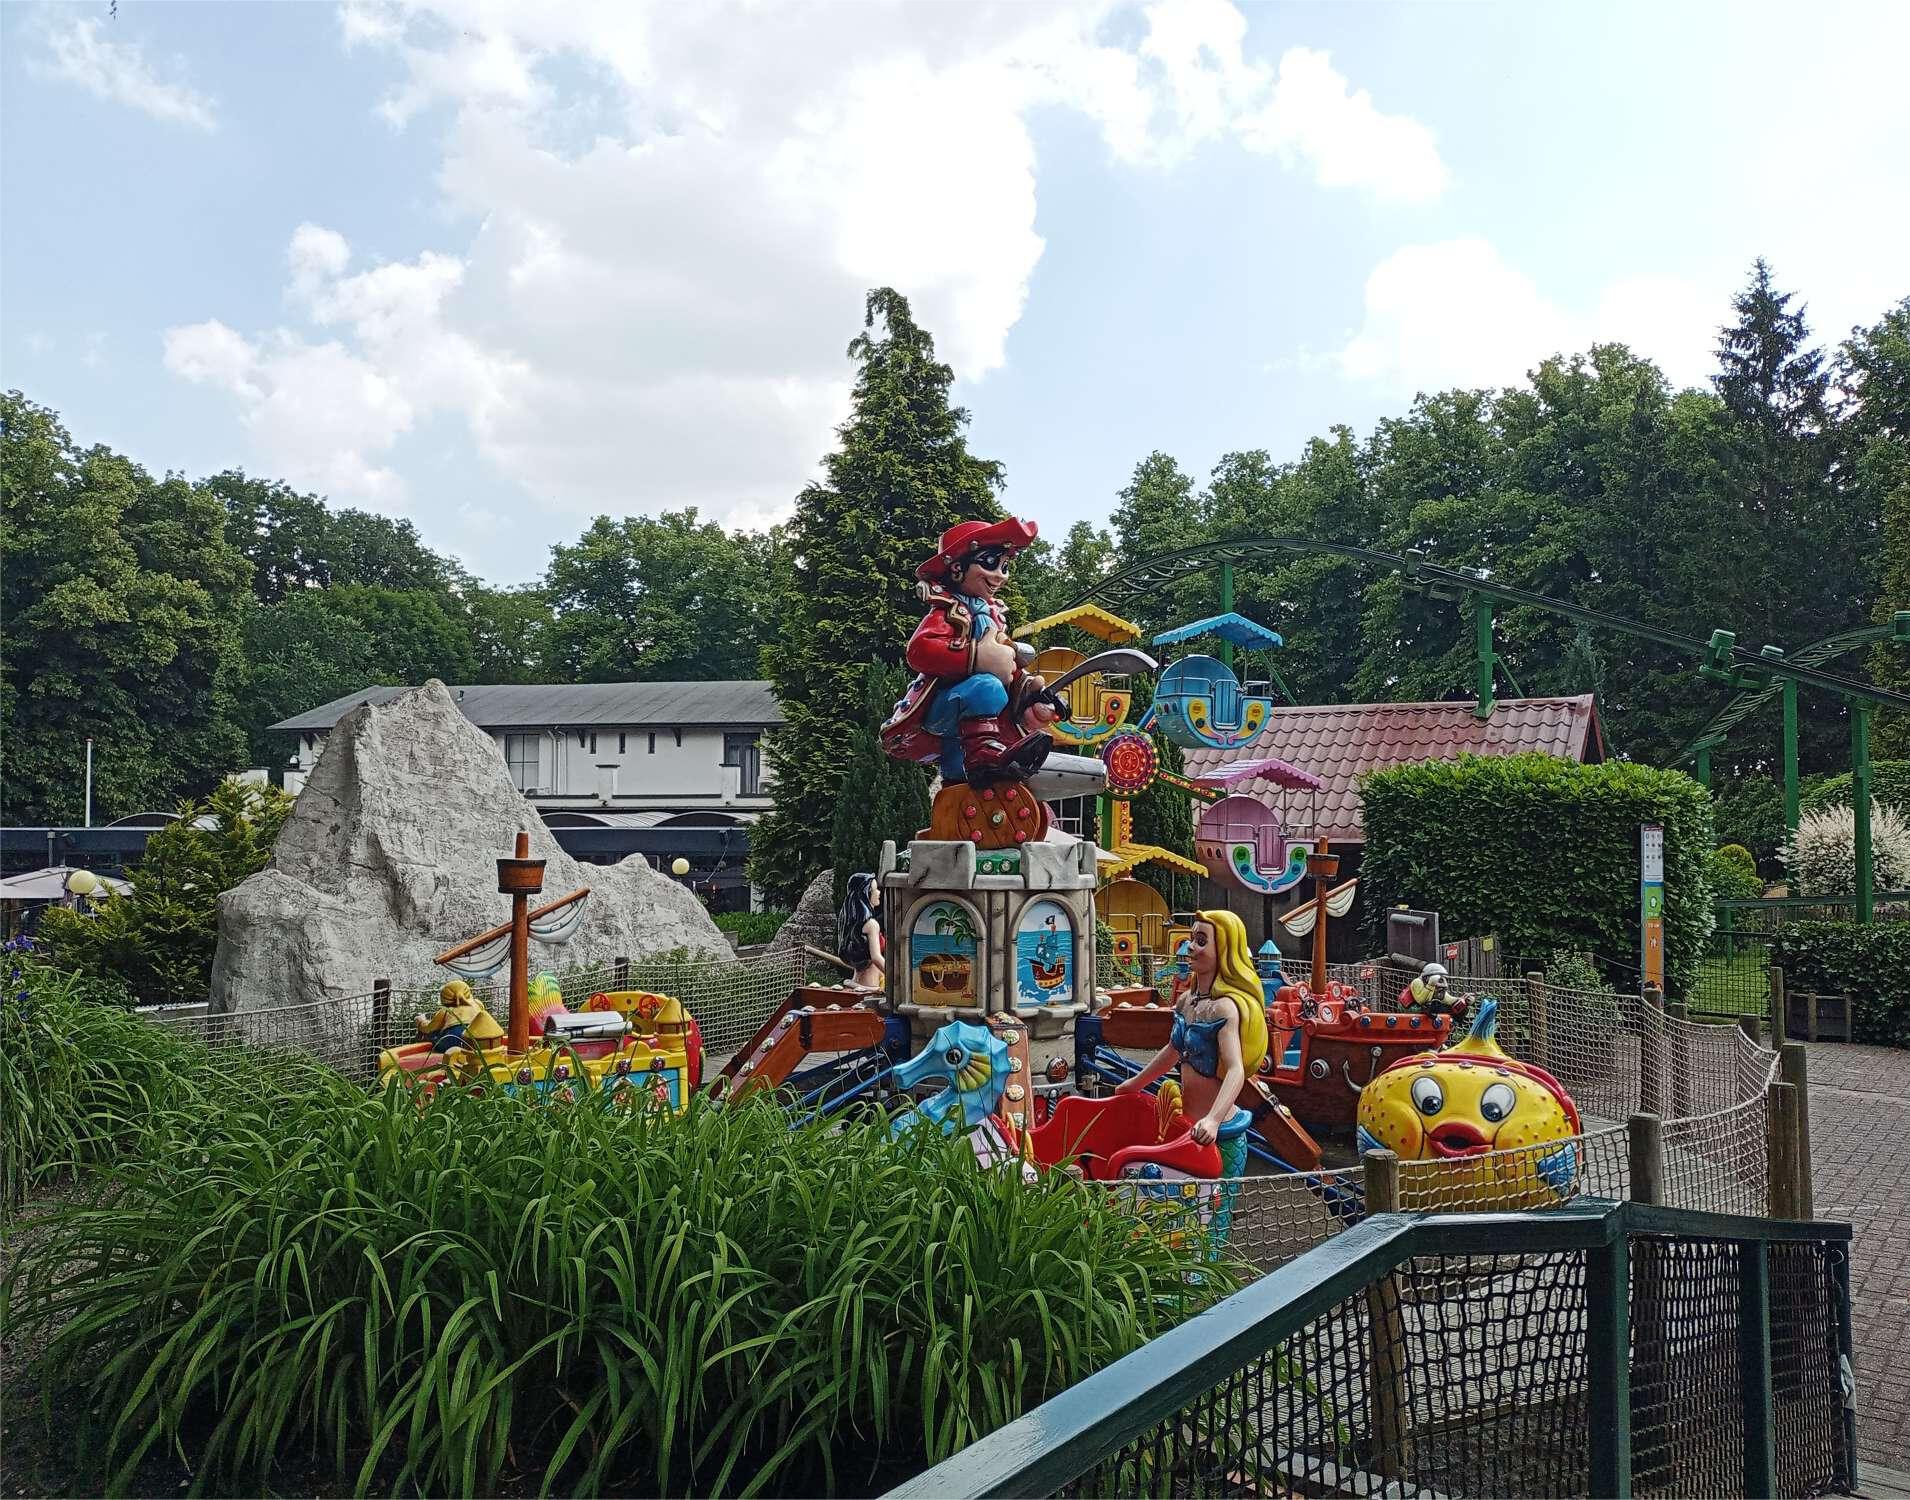 Op de foto staan twee attracties voor de jongste kinderen. Op de voorgrond een piraten draaimolen waarvan de bakjes omhoog kunnen. Daarachter een mini-reuzenrad en er is nog een glimp te zien van de keverachtbaan.